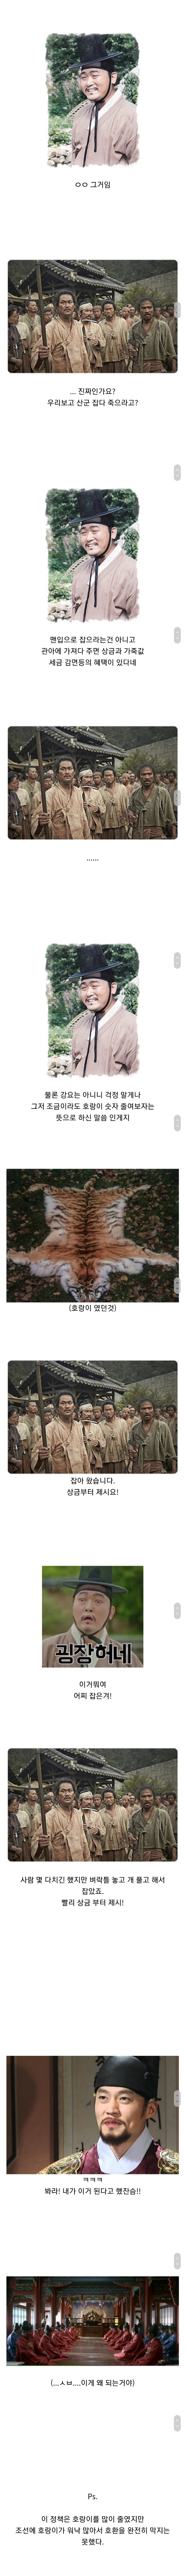 ●朝鮮で虎の数を減らそうとしたこと